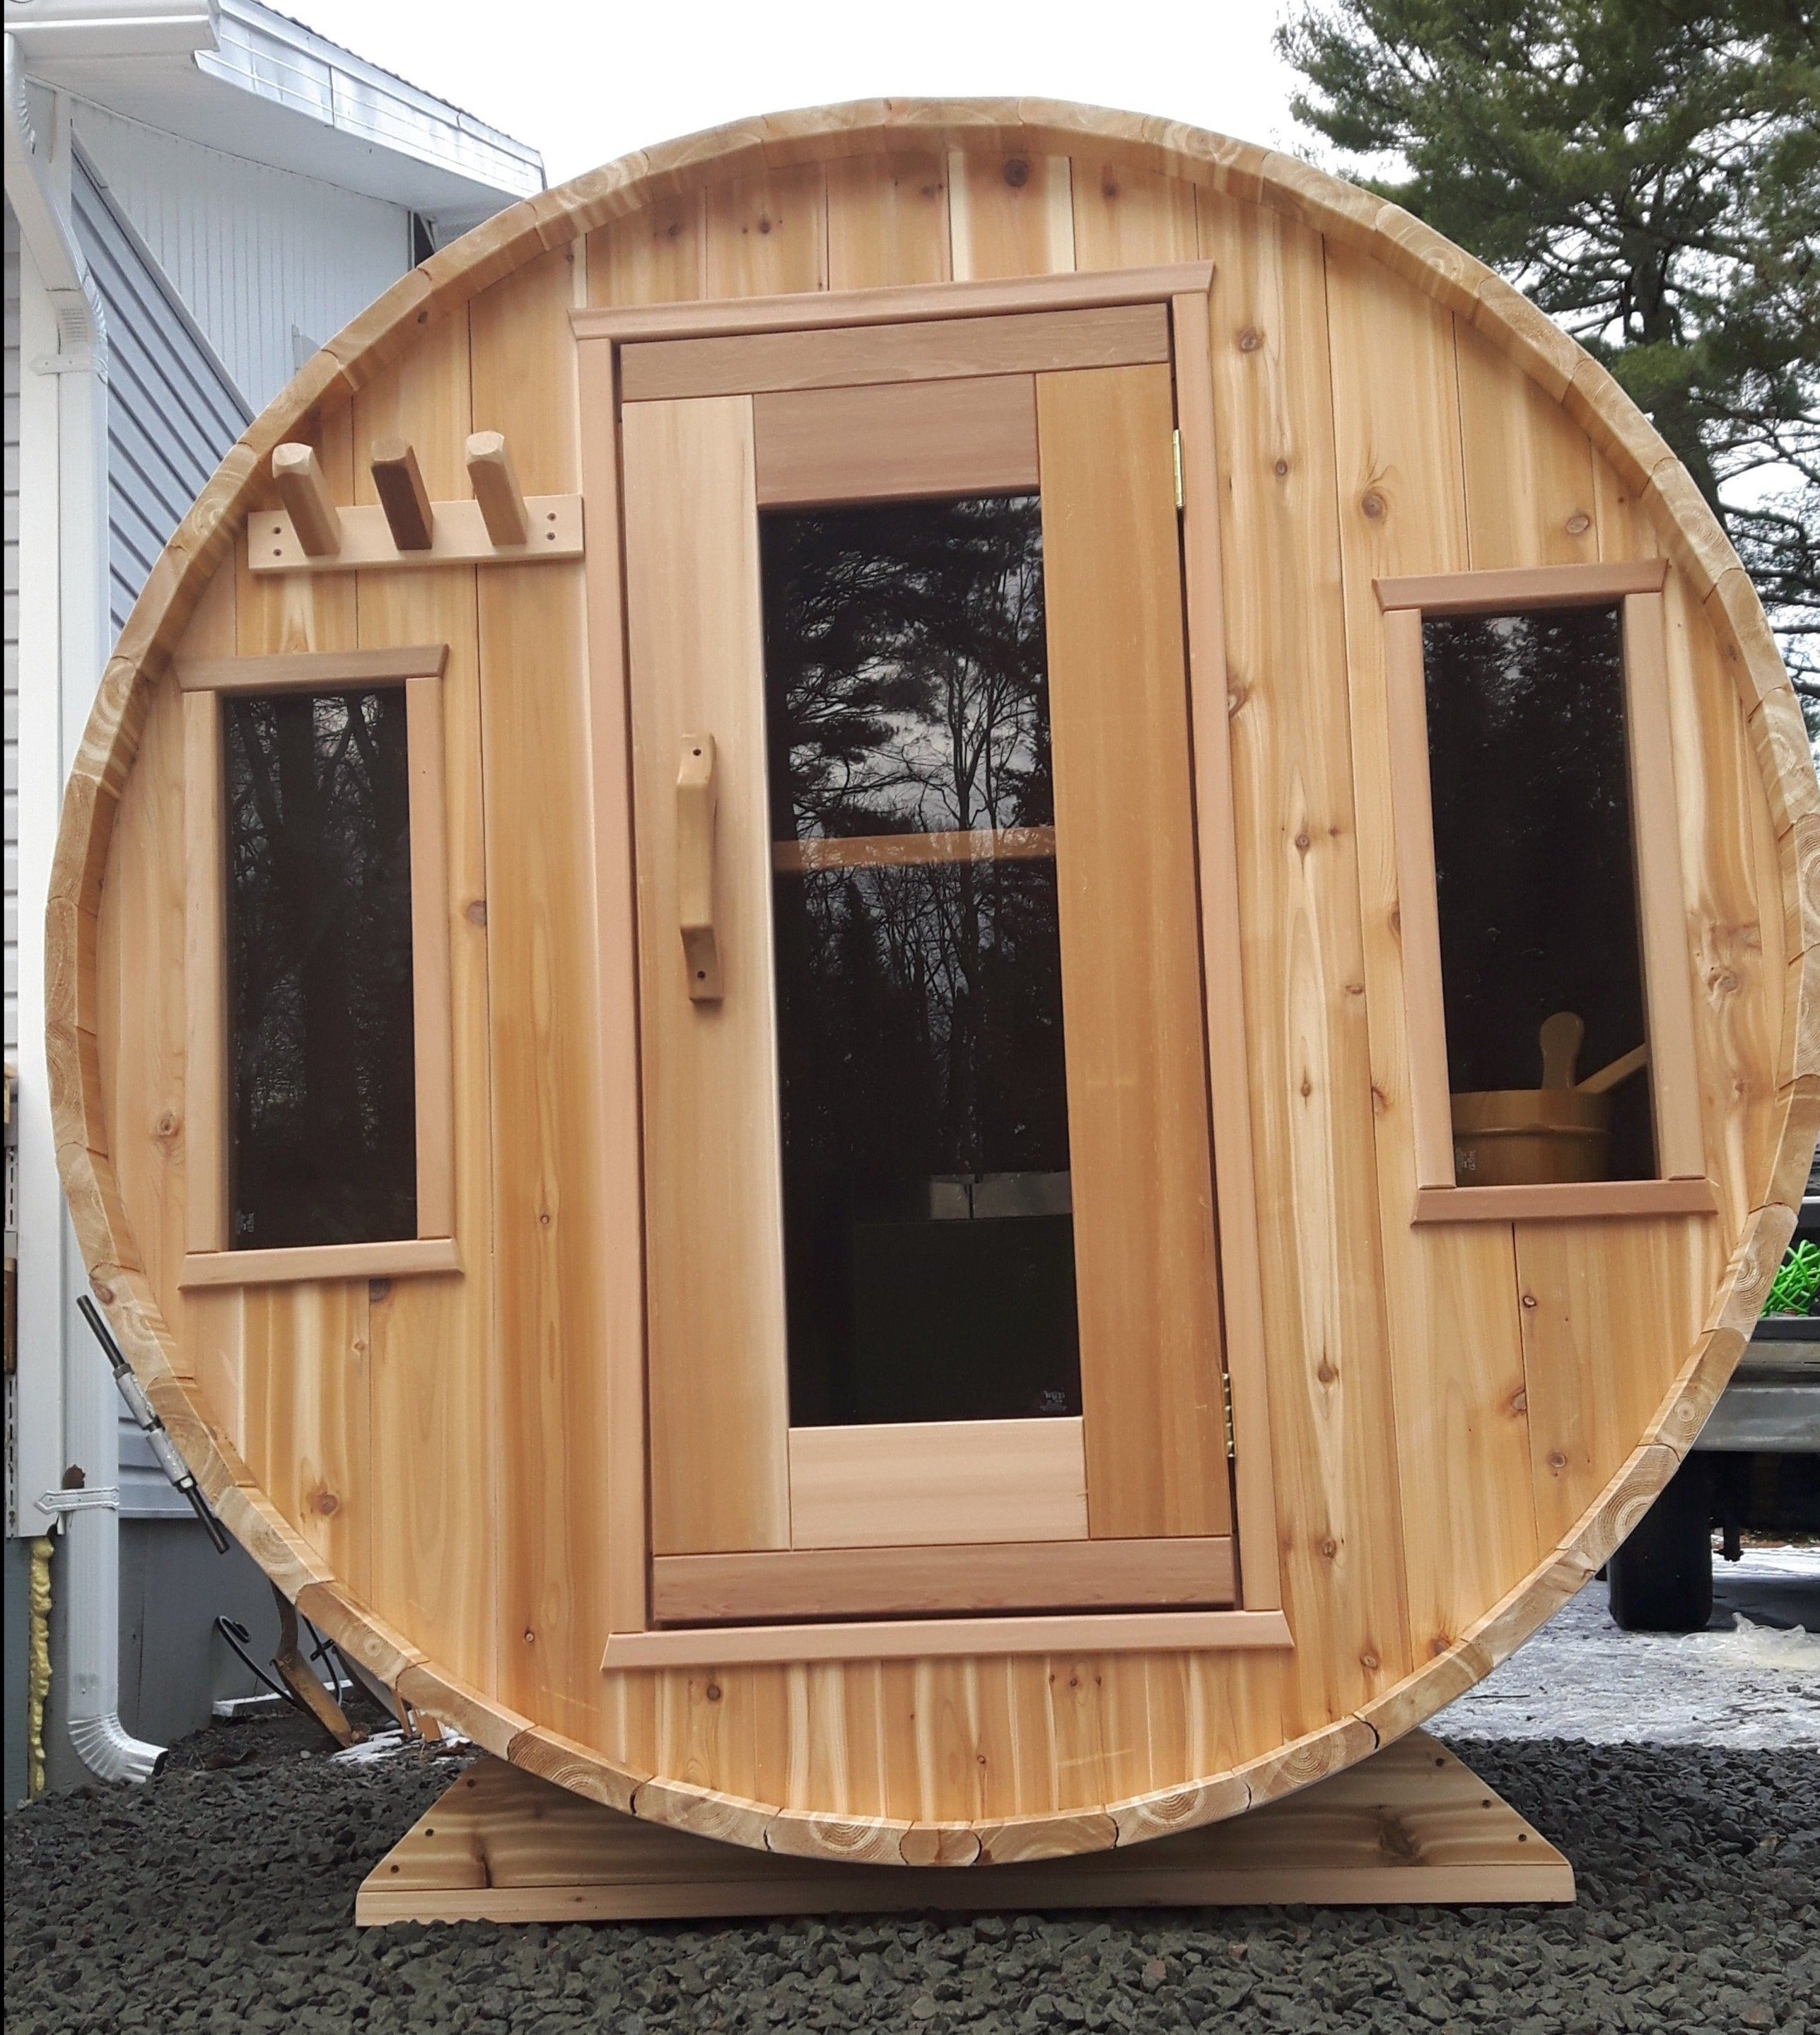 Knotty Barrel sauna with 2 windows 